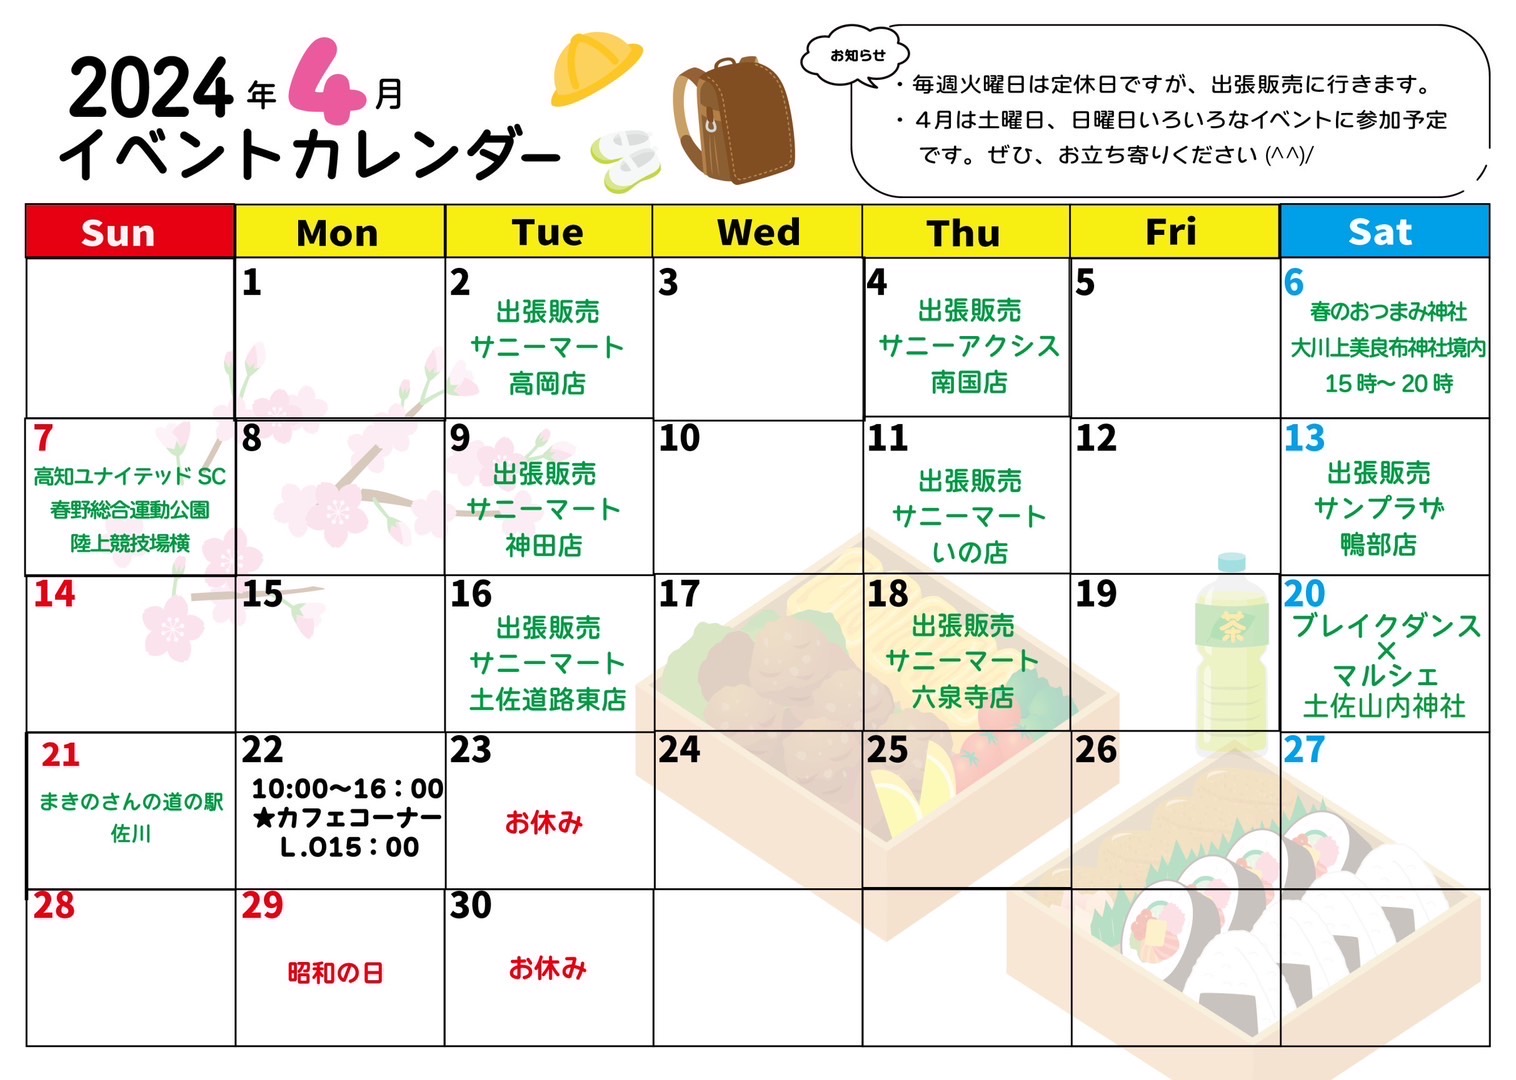 4月イベントカレンダー 